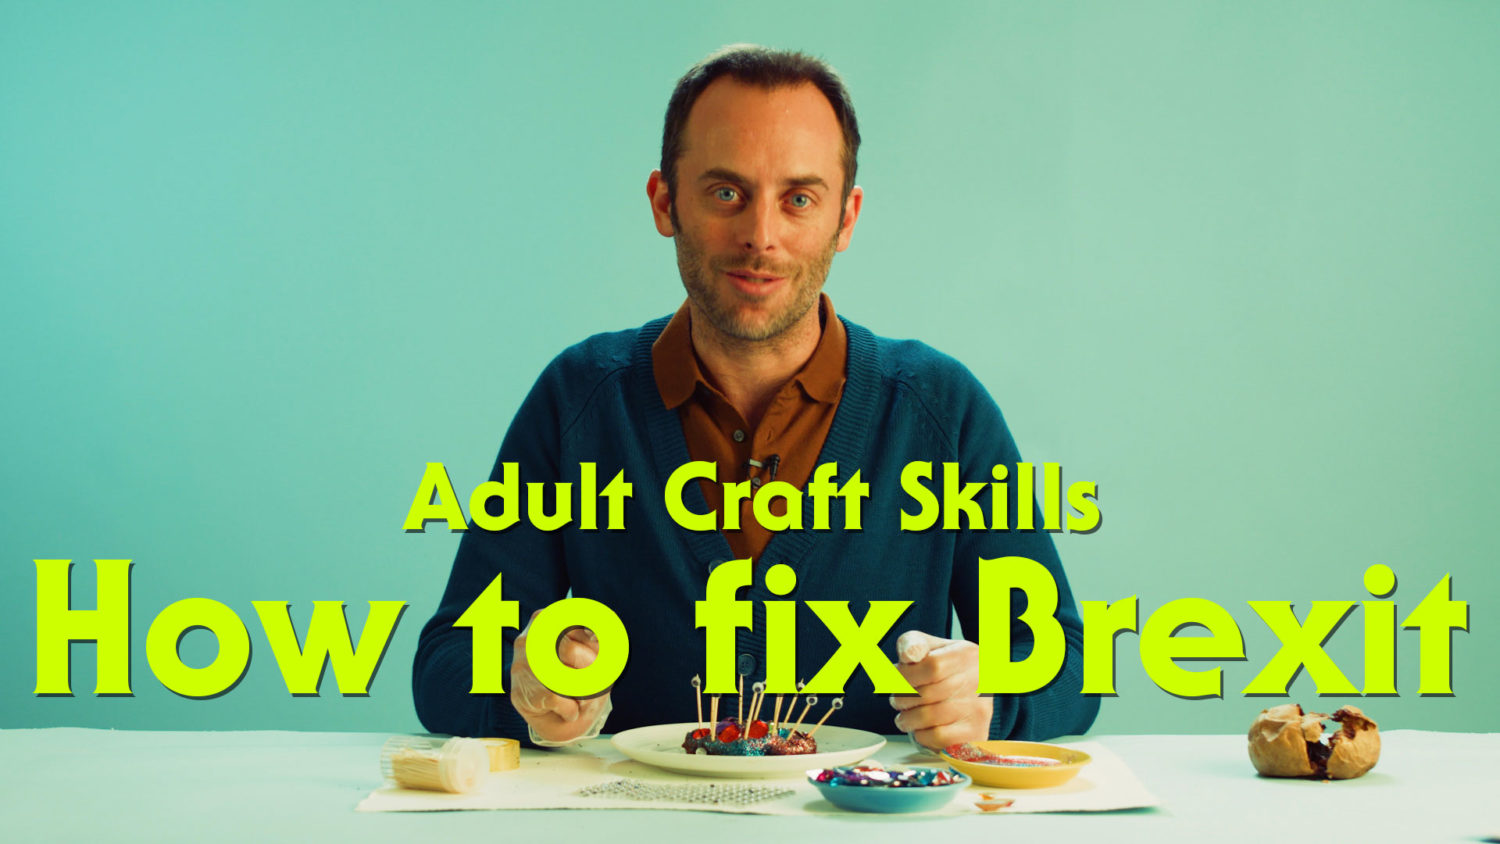 Adult Craft Skills